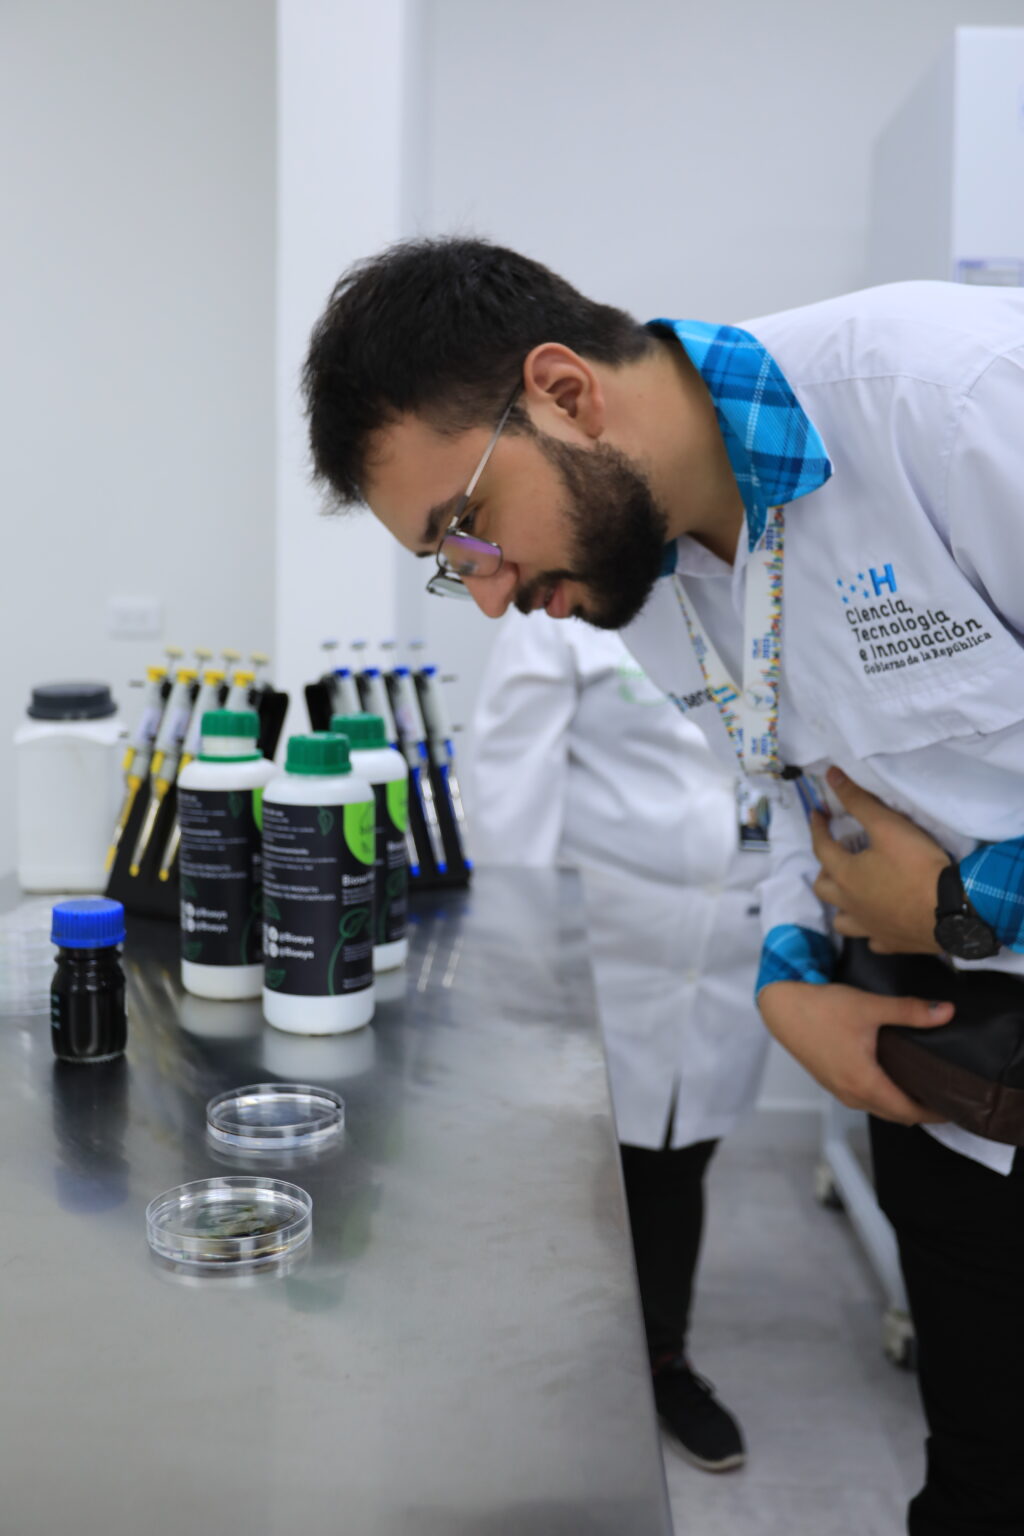 Delegados de la CELAC visitaron instalaciones del Parque Científico Tecnológico de Venezuela + Ciencia